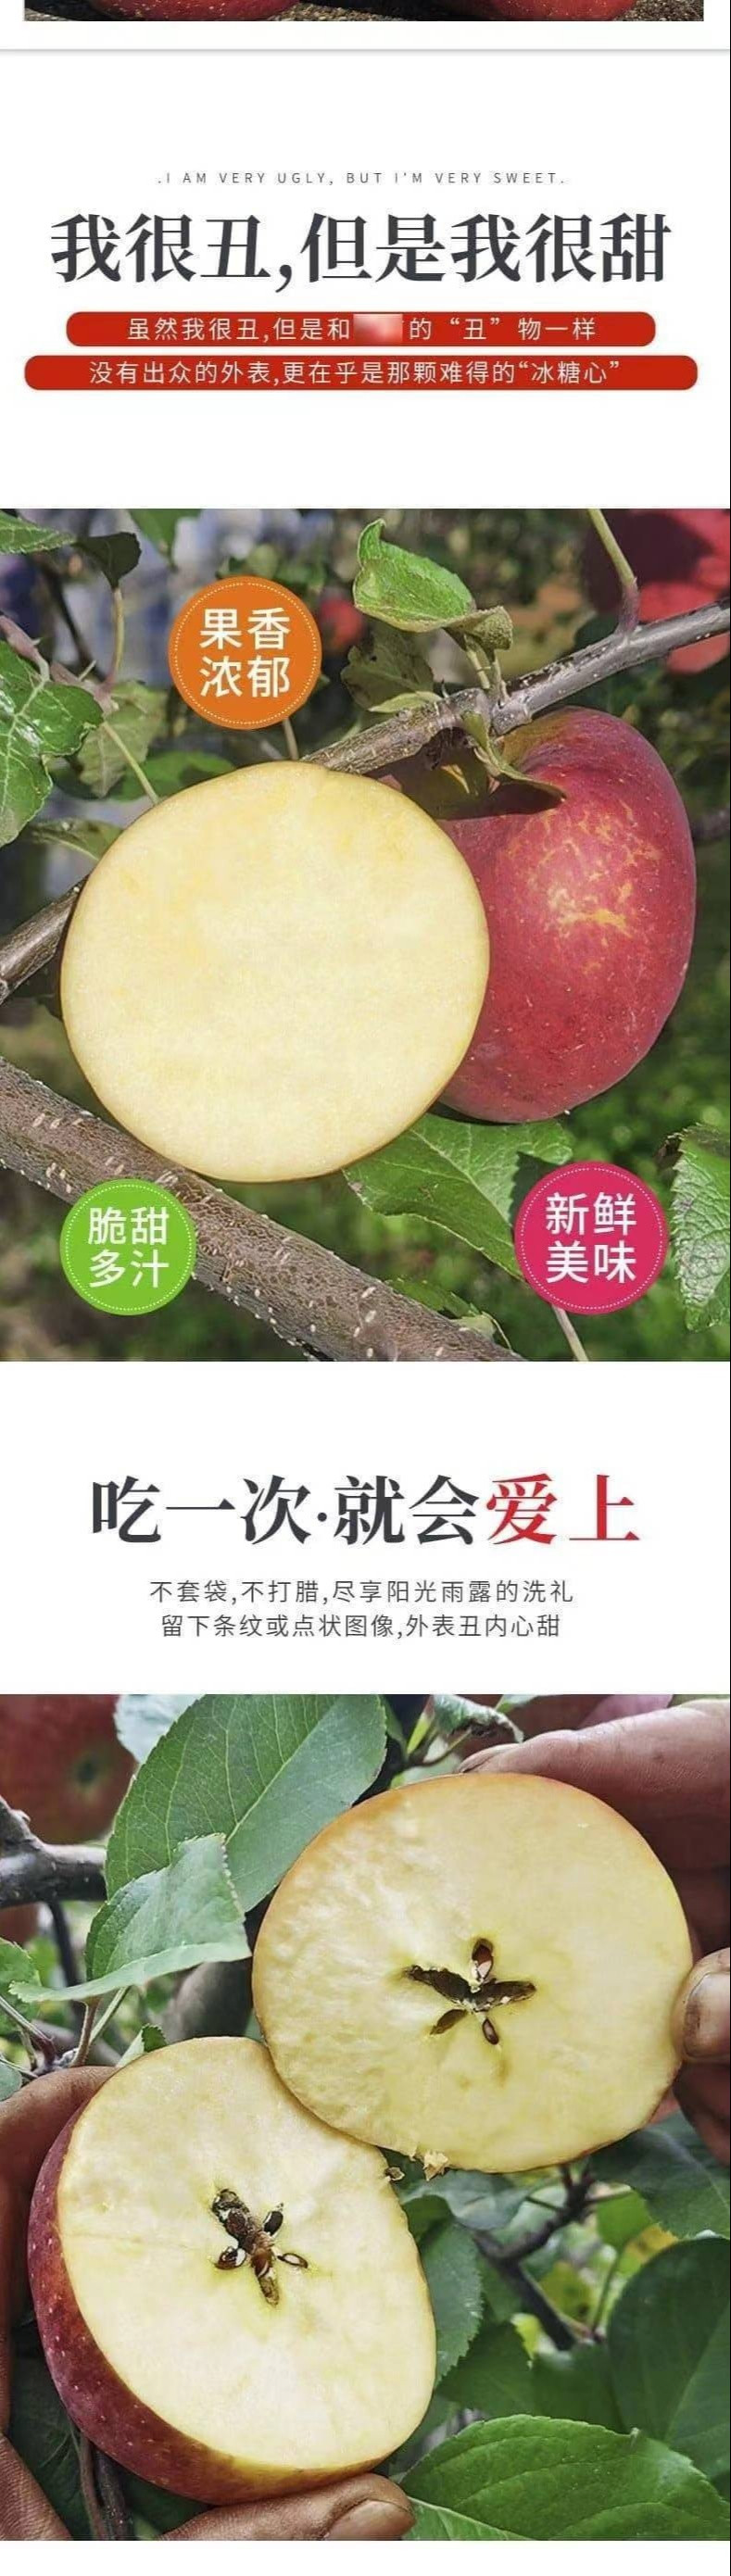 农家自产 【达州开江】大凉山苹果